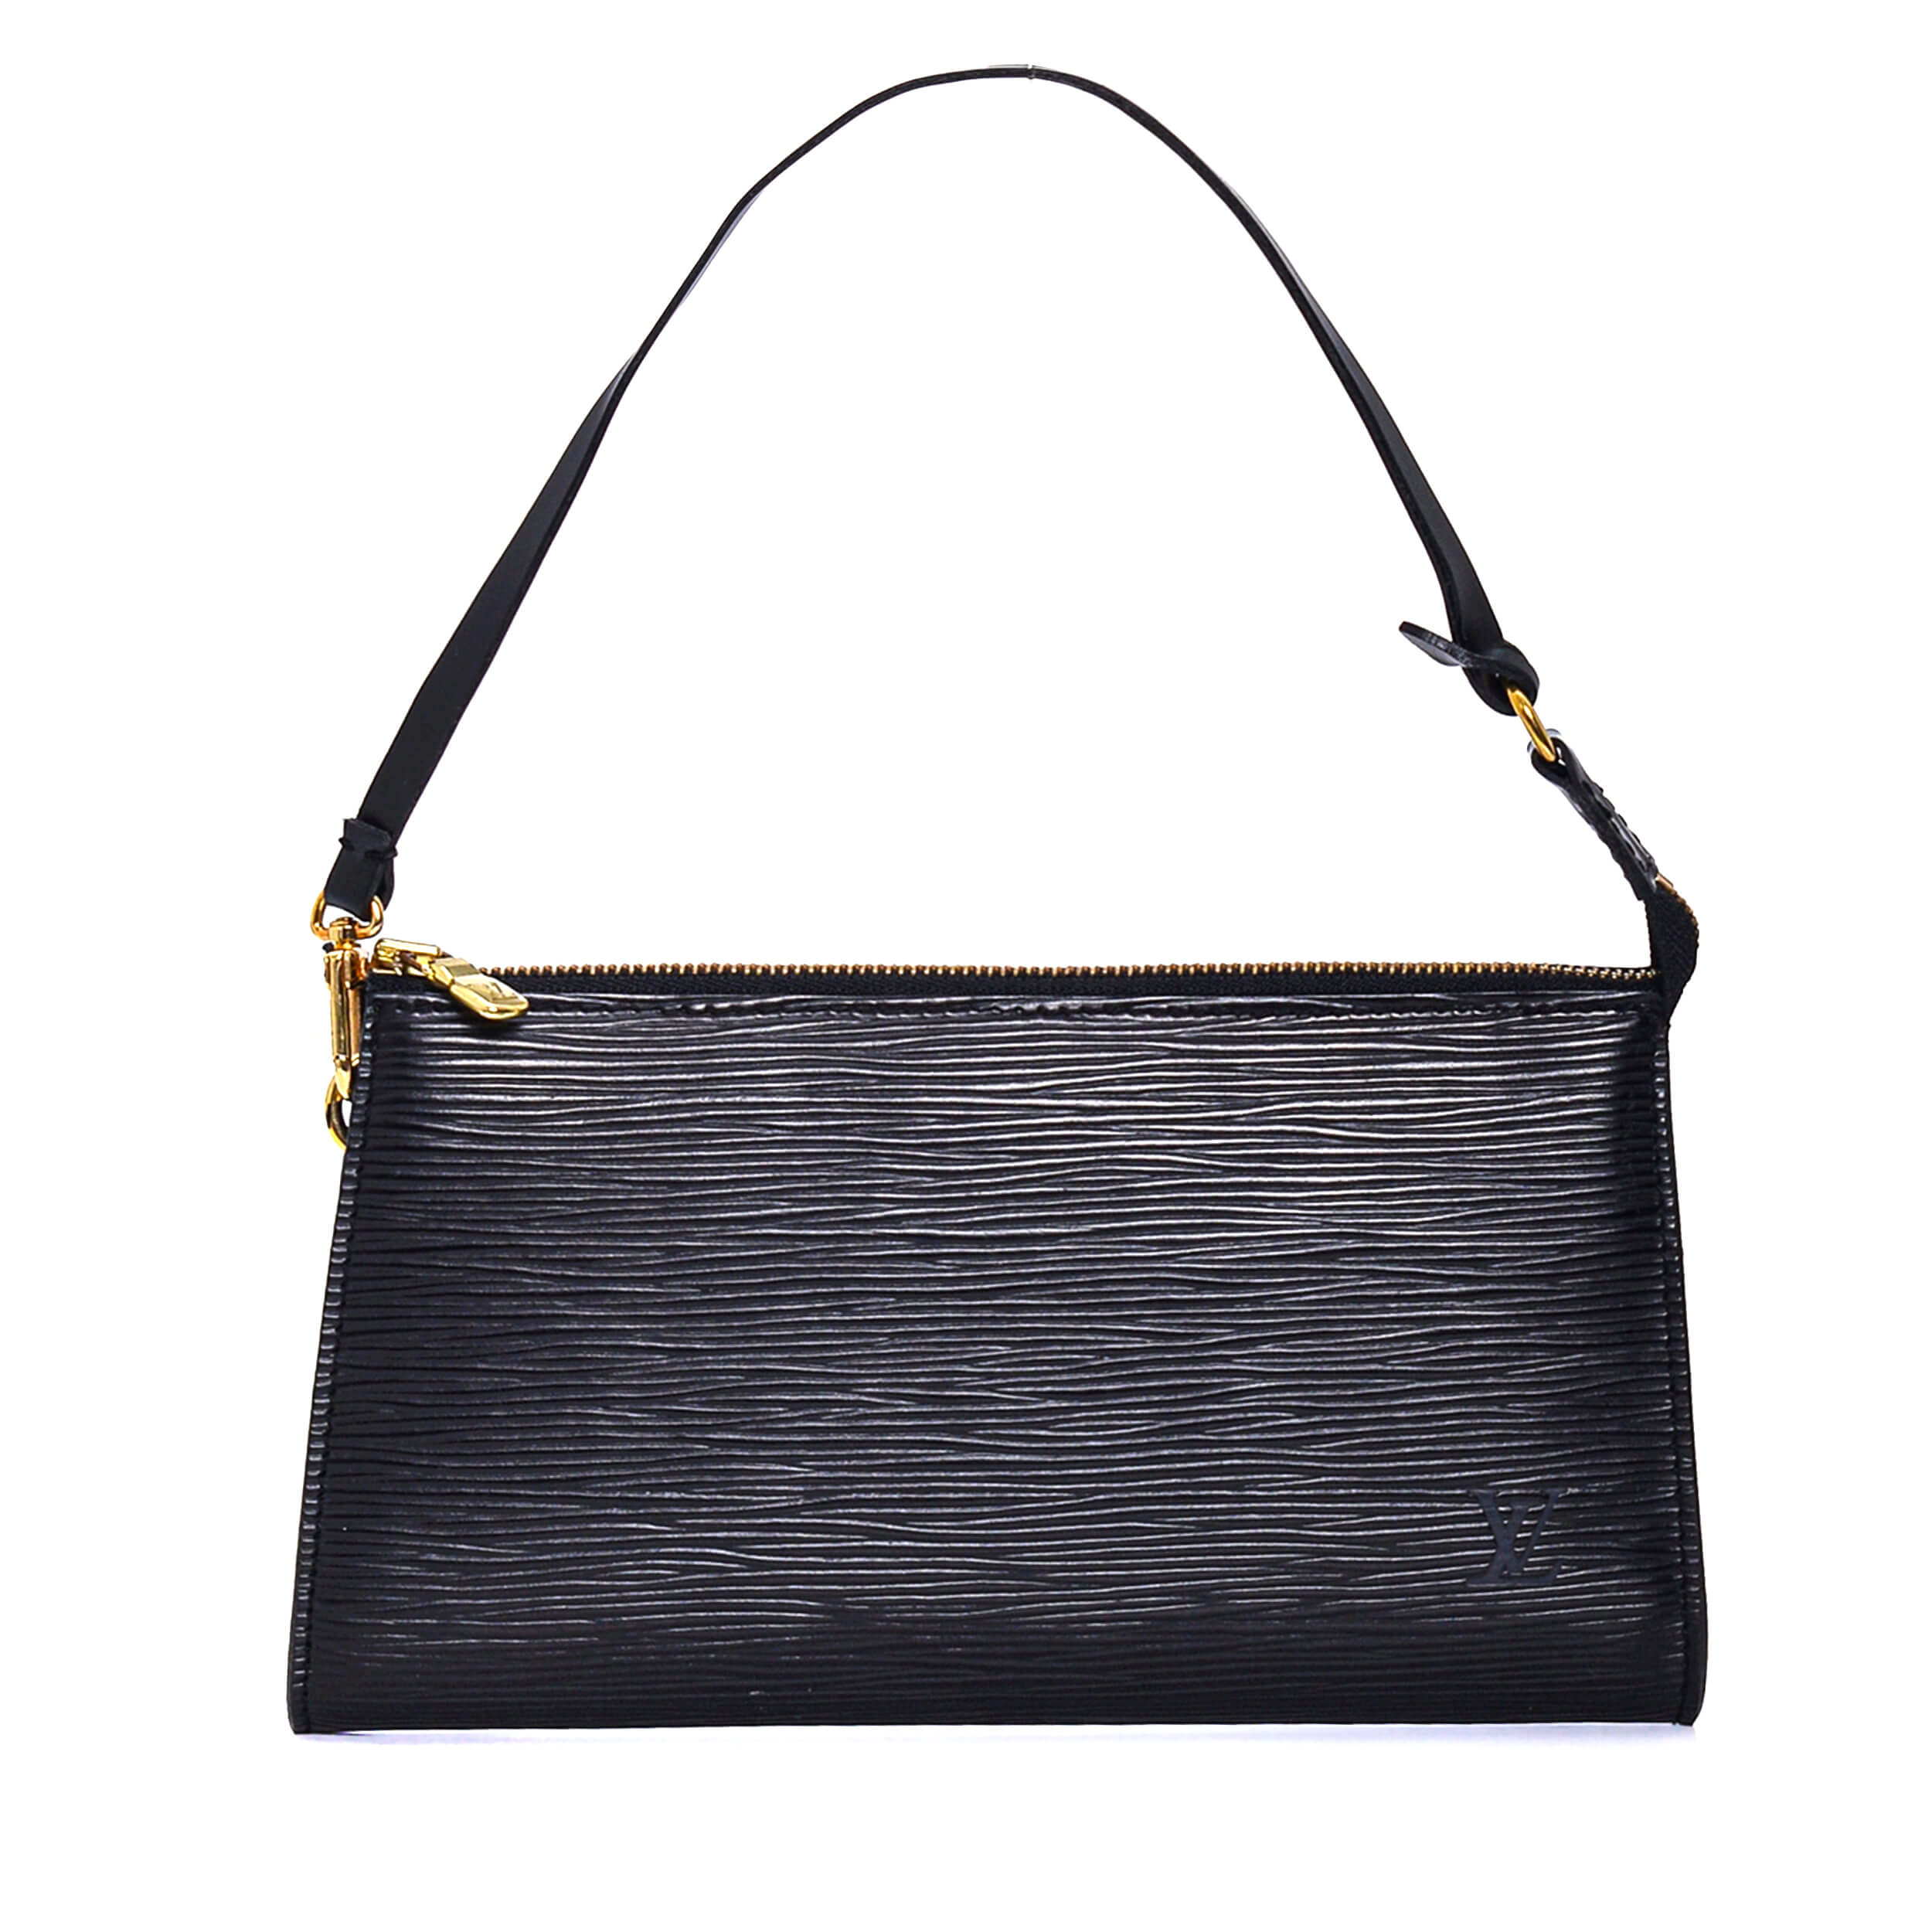 Louis Vuitton - Black Epi Leather Baguette Bag